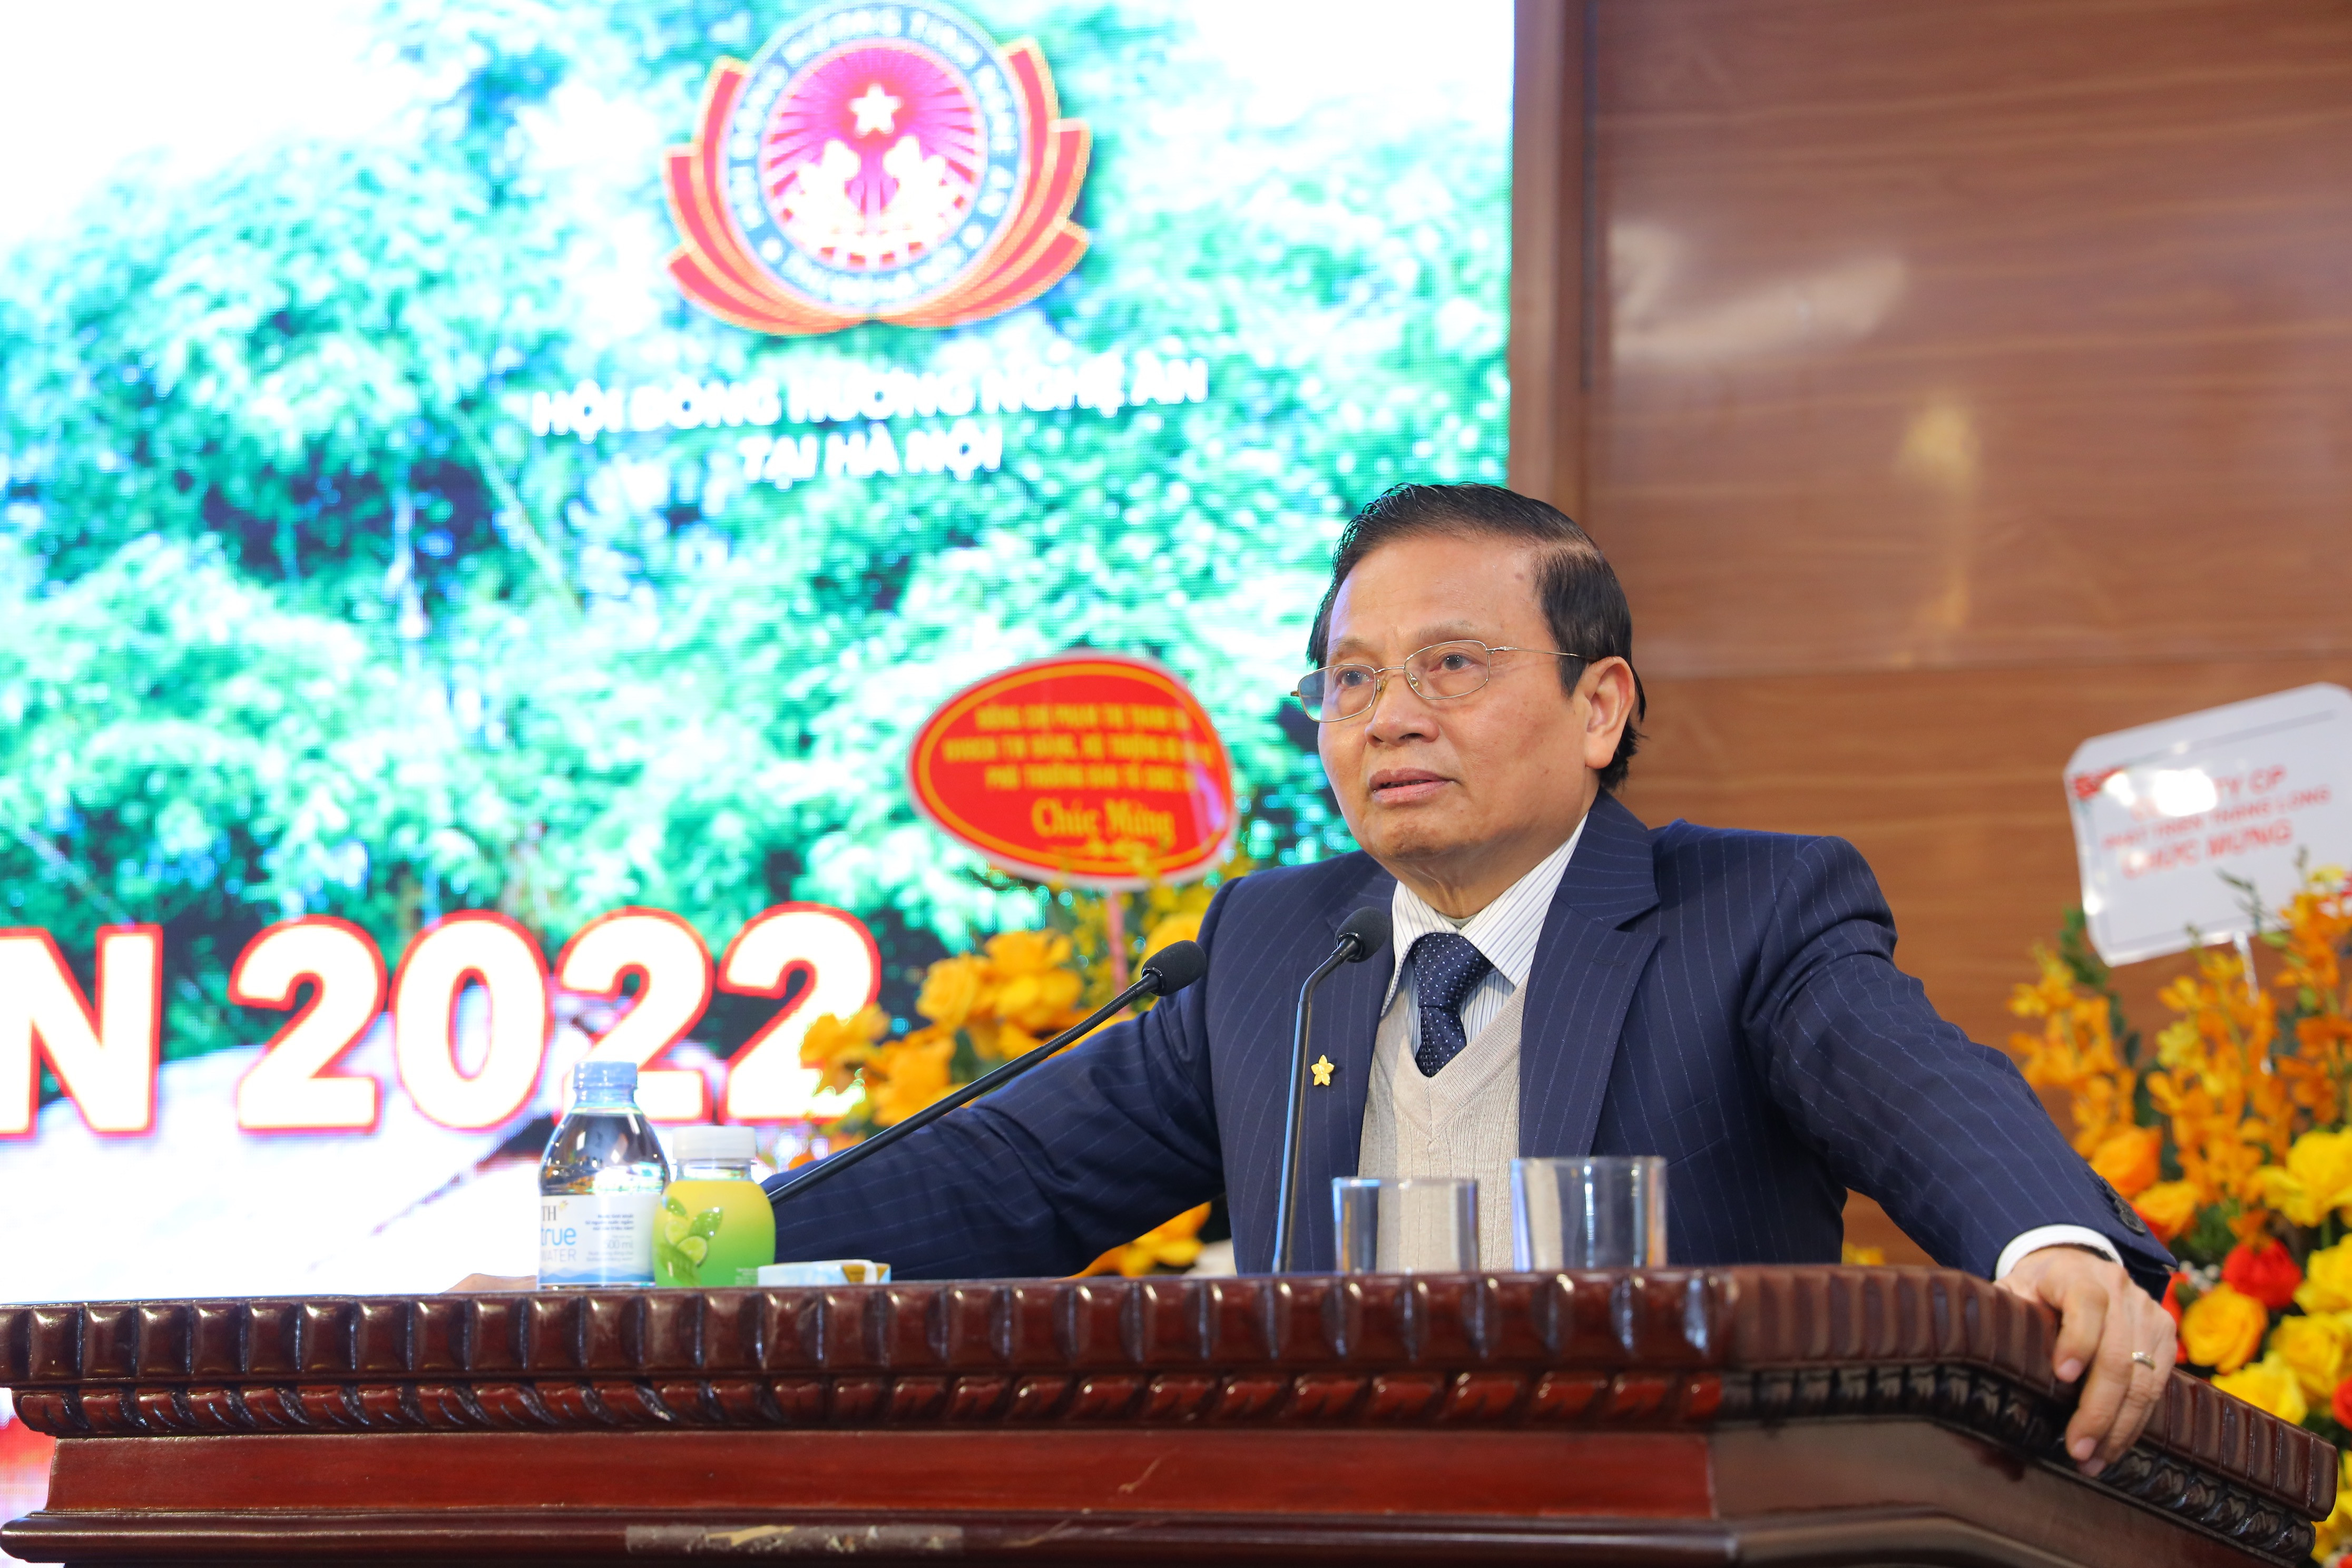 Đồng chi Lê Doãn Hợp - CHủ tịch Hội đồng hương Nghệ An tại Hà Nội phát biểu tại cuộc gặp mặt. Ảnh Nguyên Nguyên